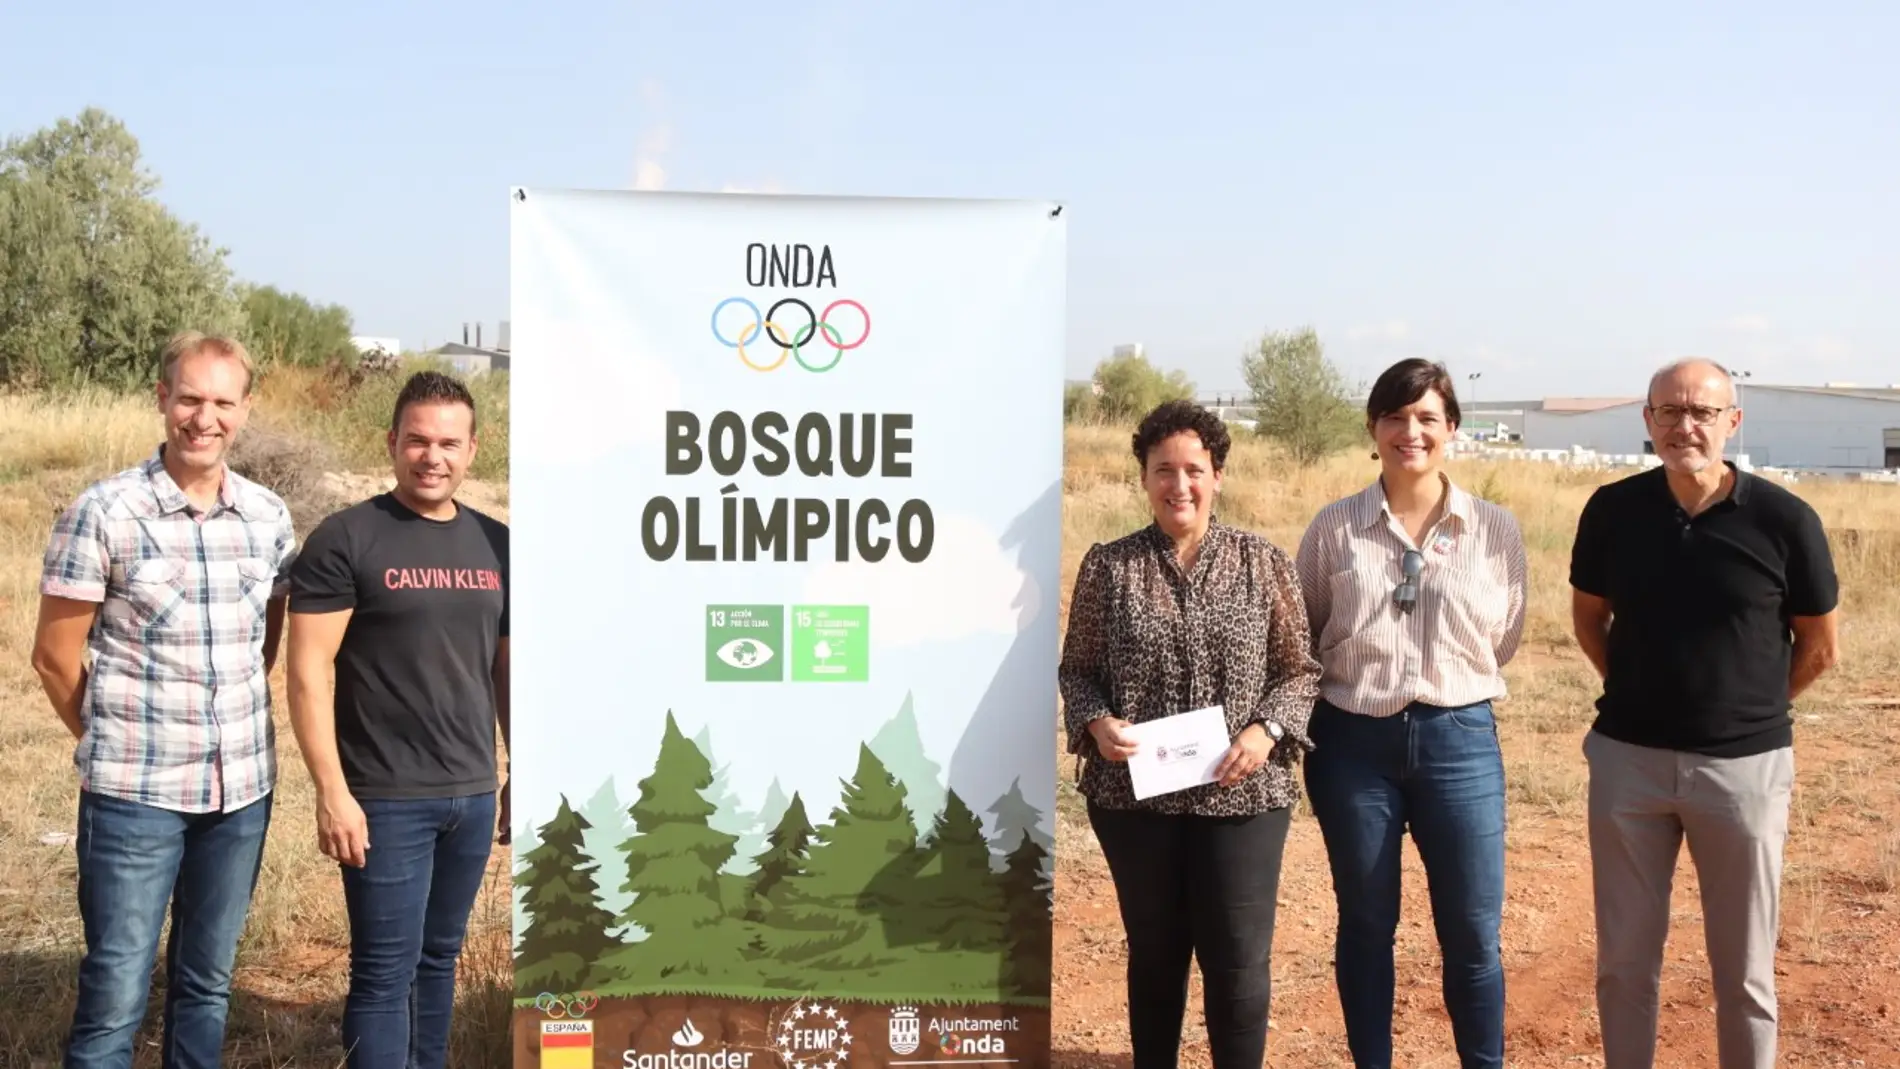 Onda albergará uno de los cinco bosques plantados por el Comité Olímpico Español